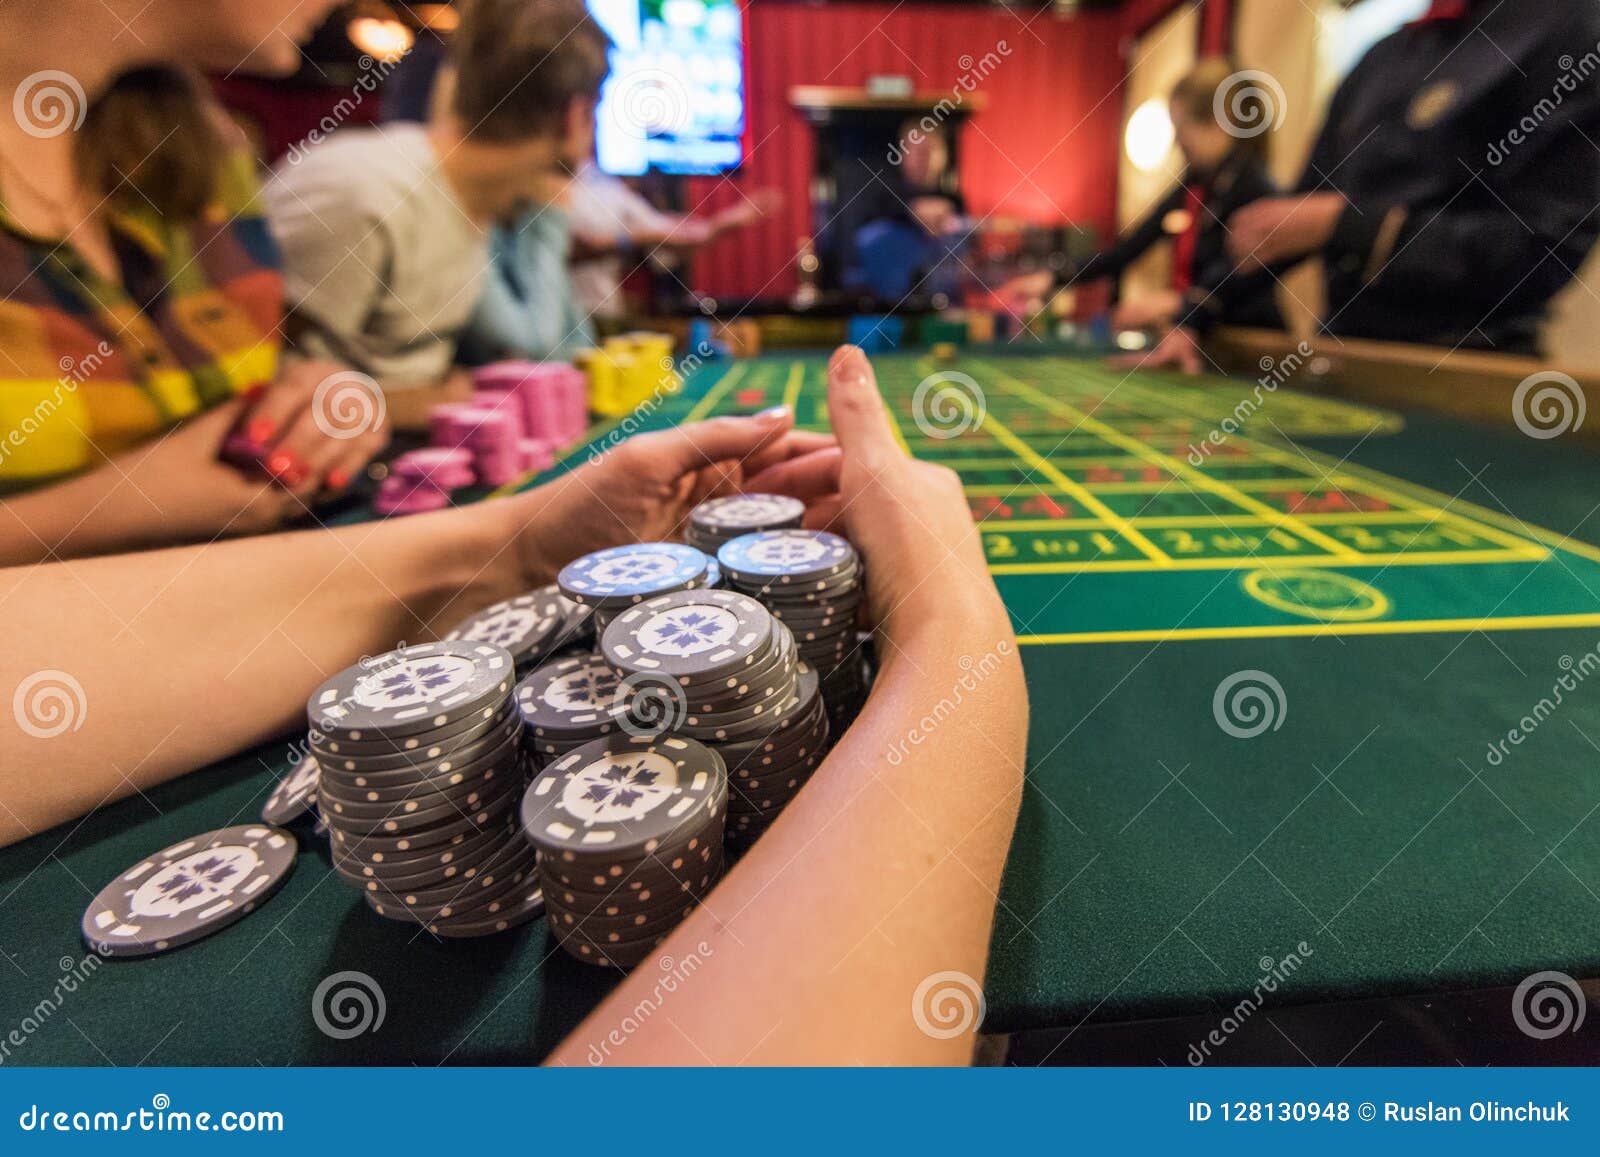 Казино азартное развлечение 1 франк казино